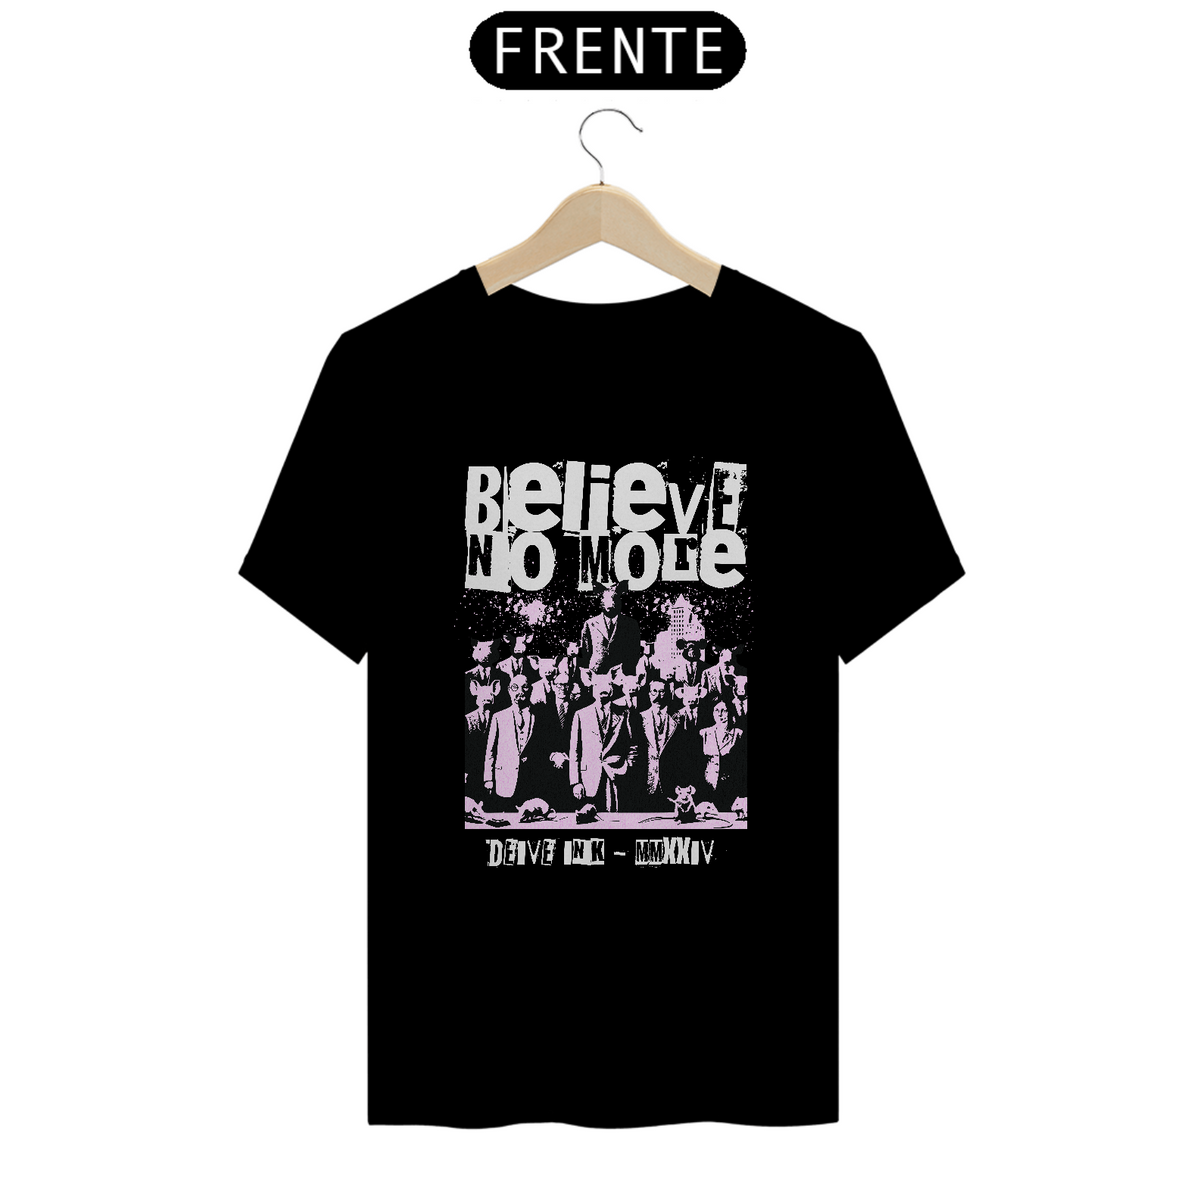 Nome do produto: Camiseta Believe No More